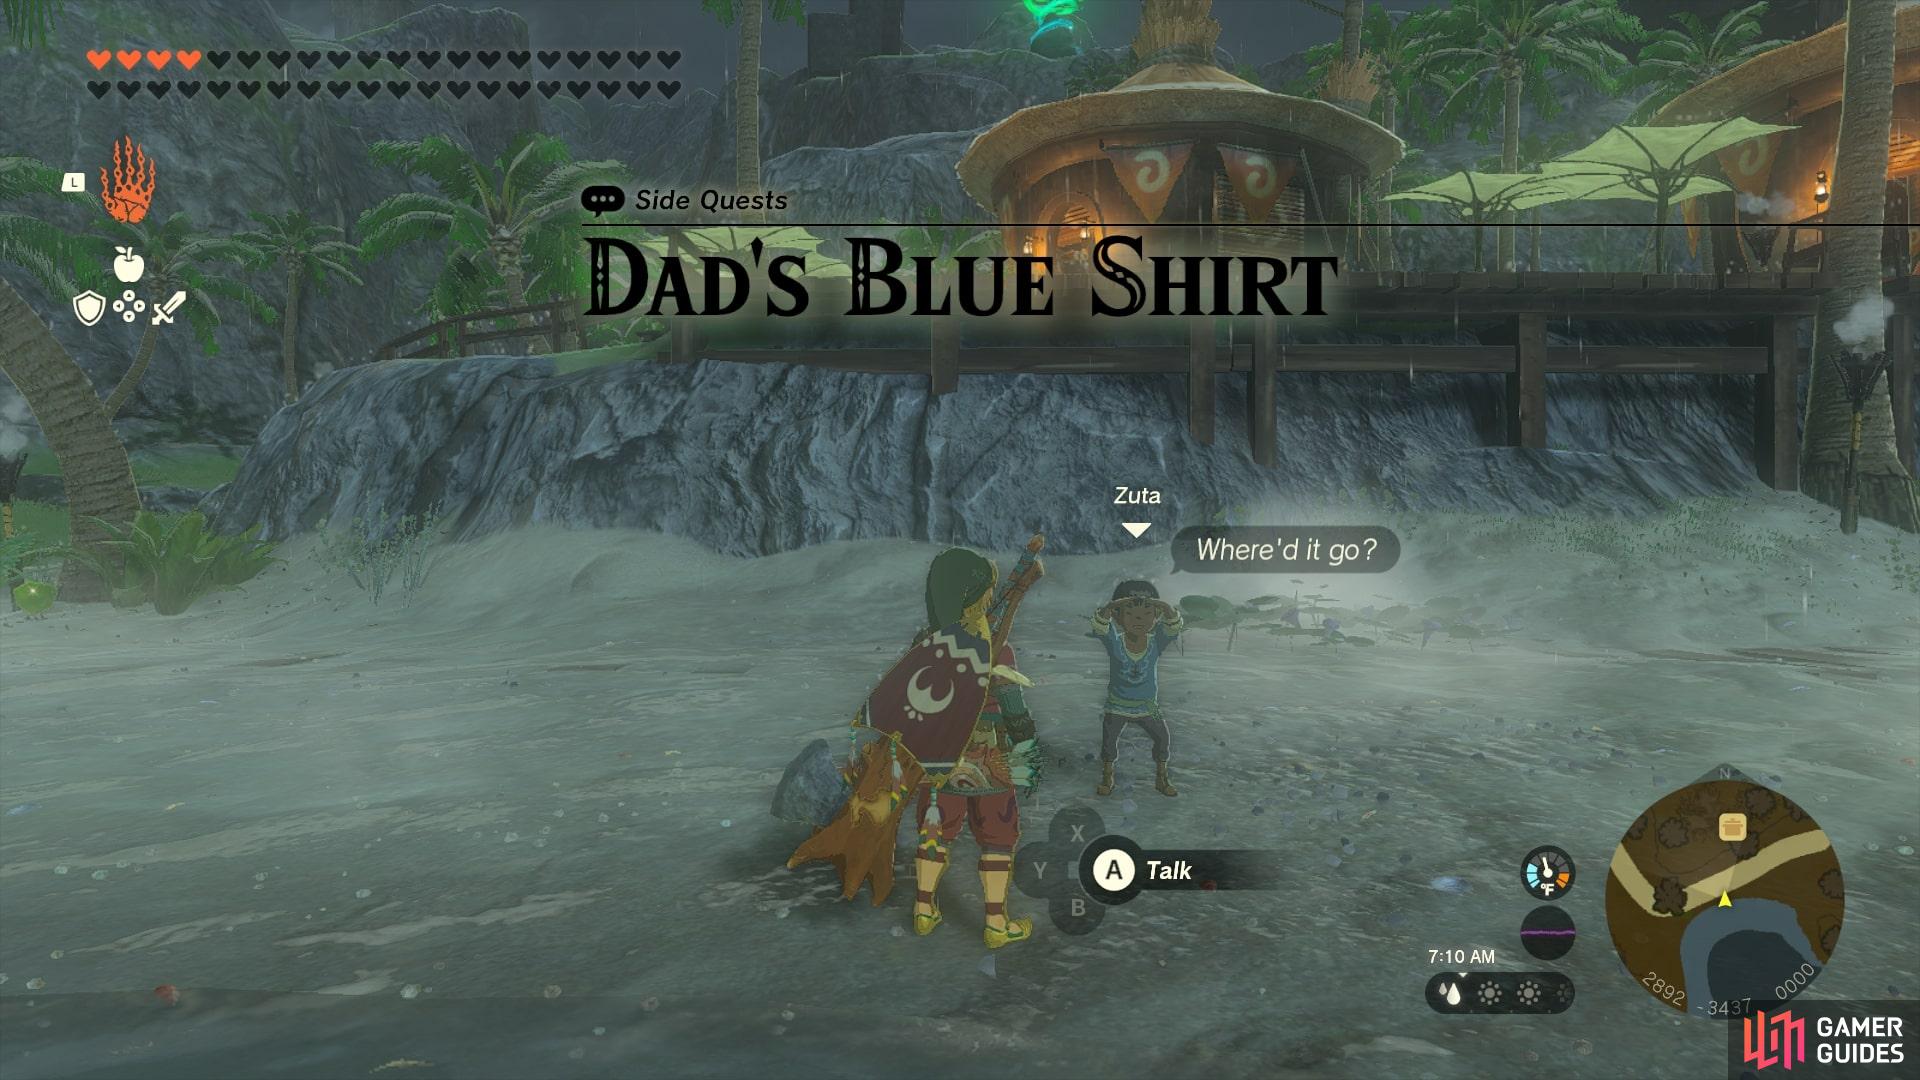 Speak with Zuta to start Dad’s Blue Shirt.